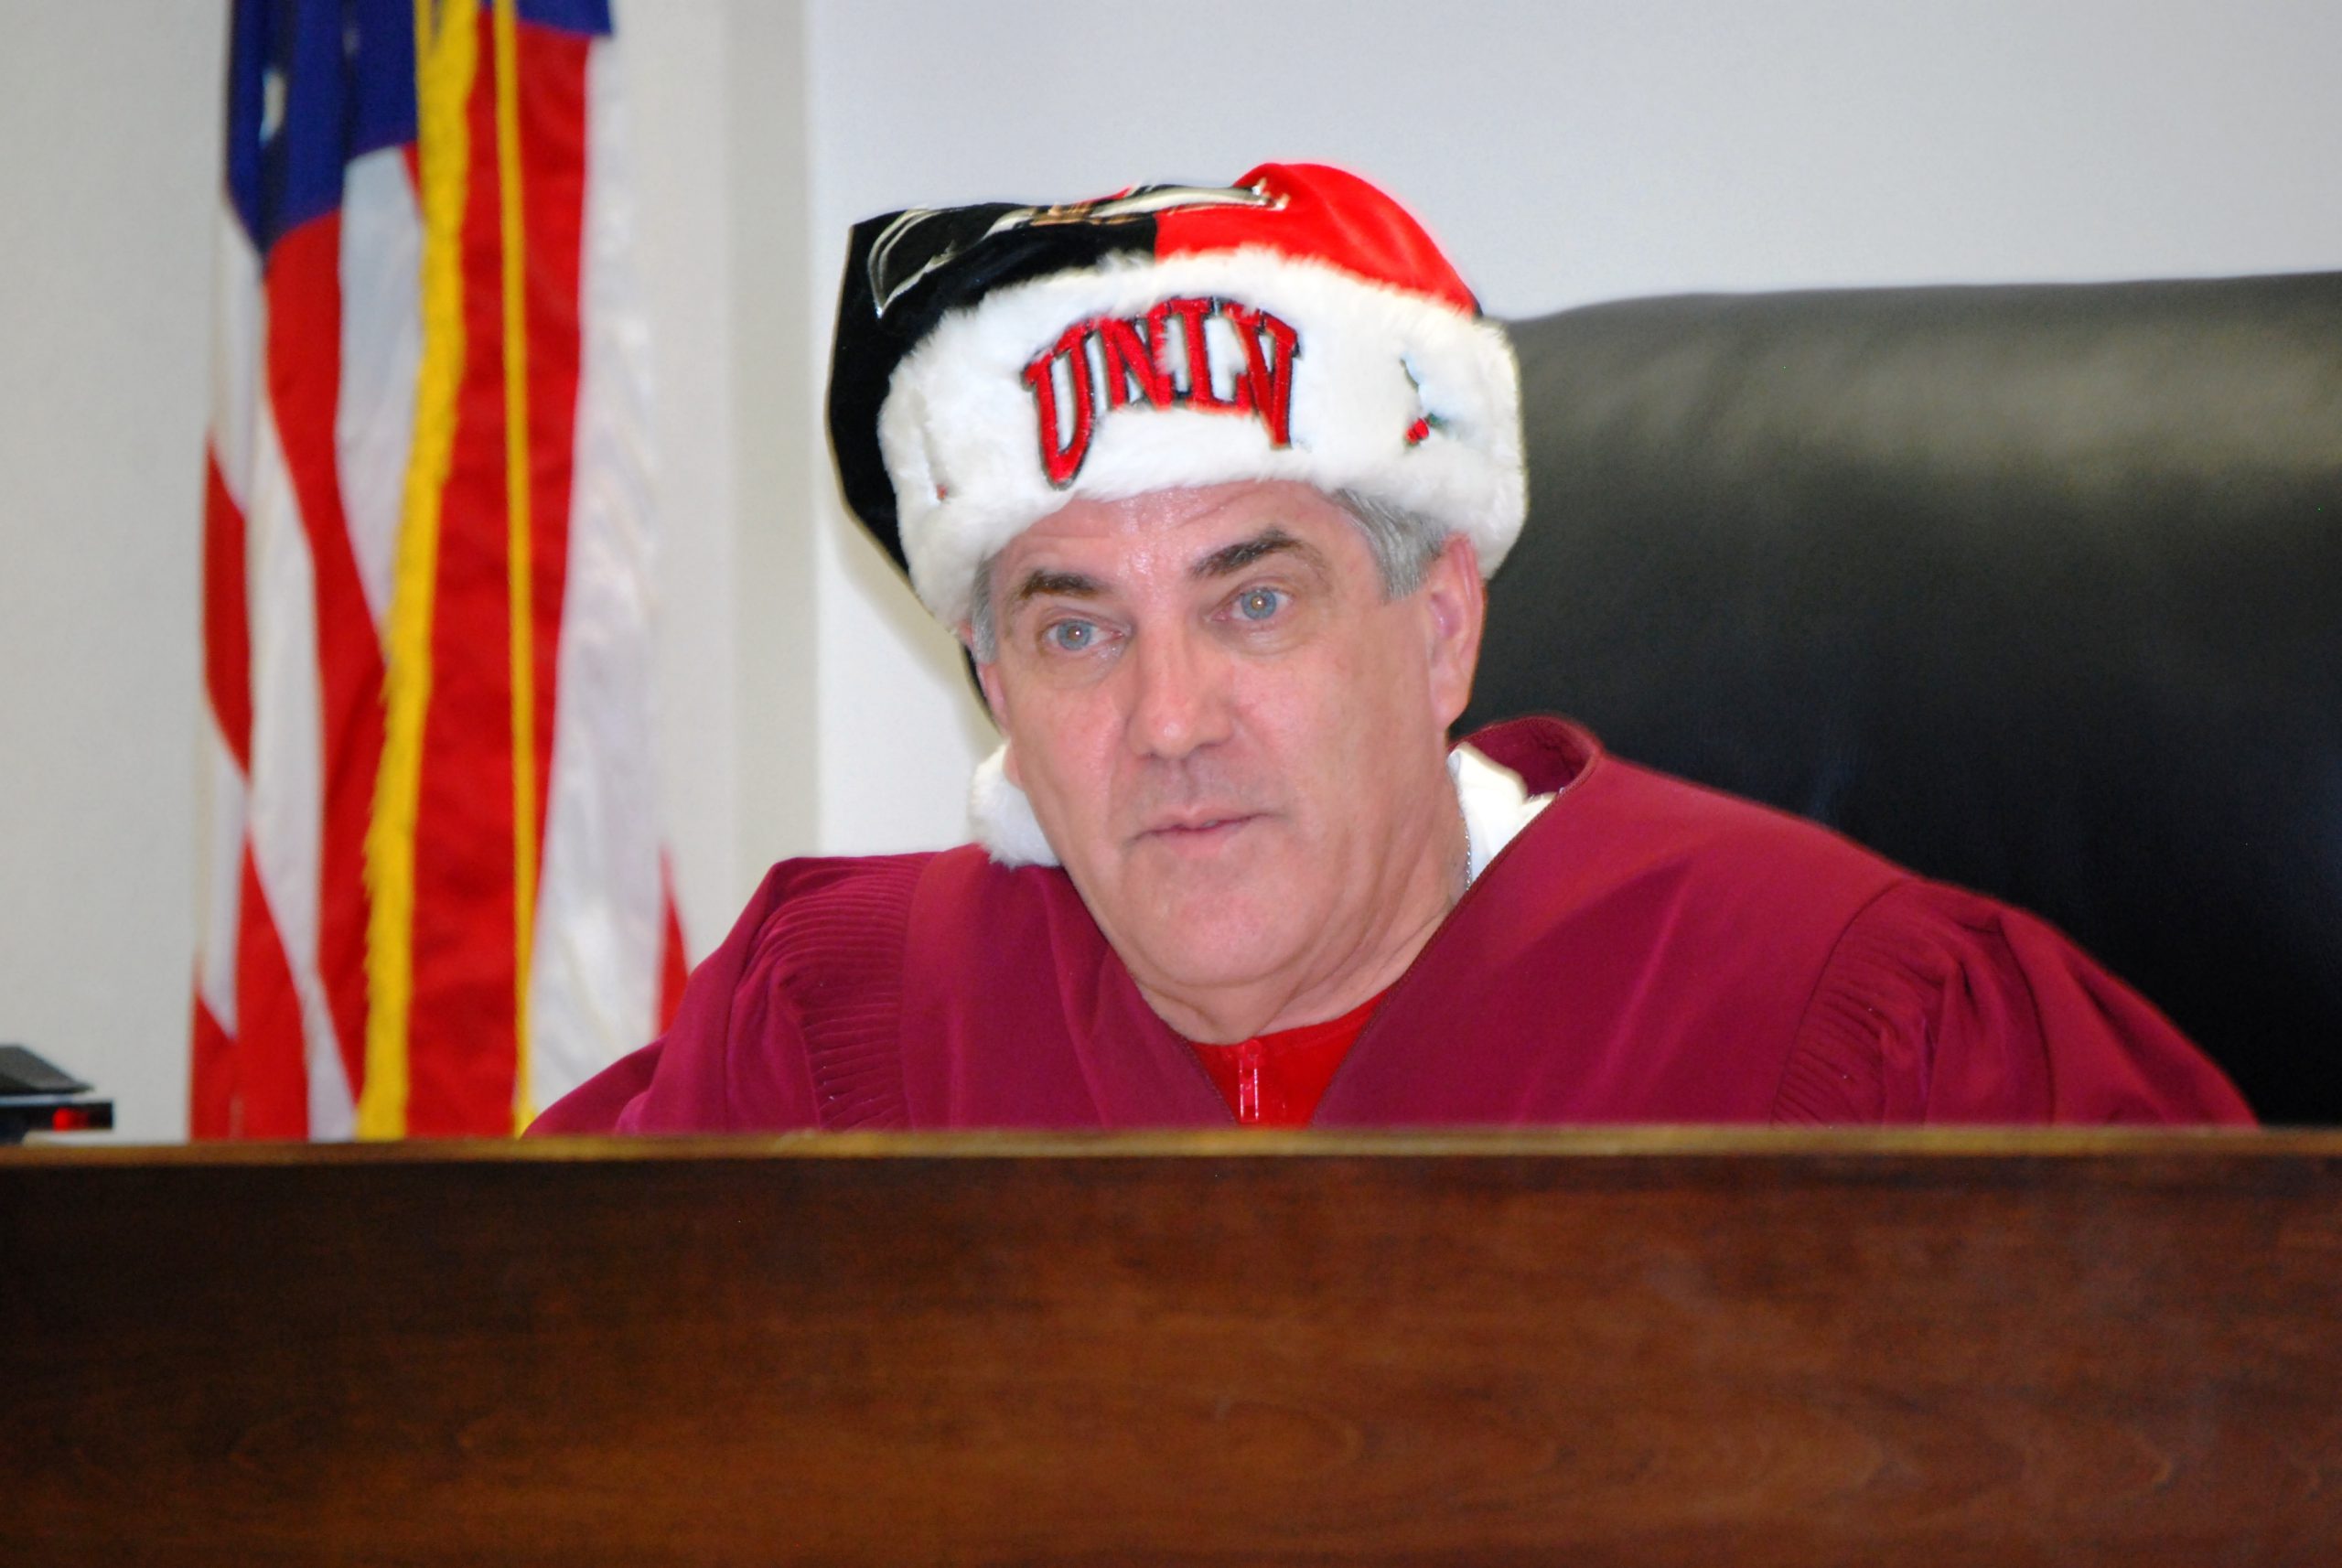 judge wearing red